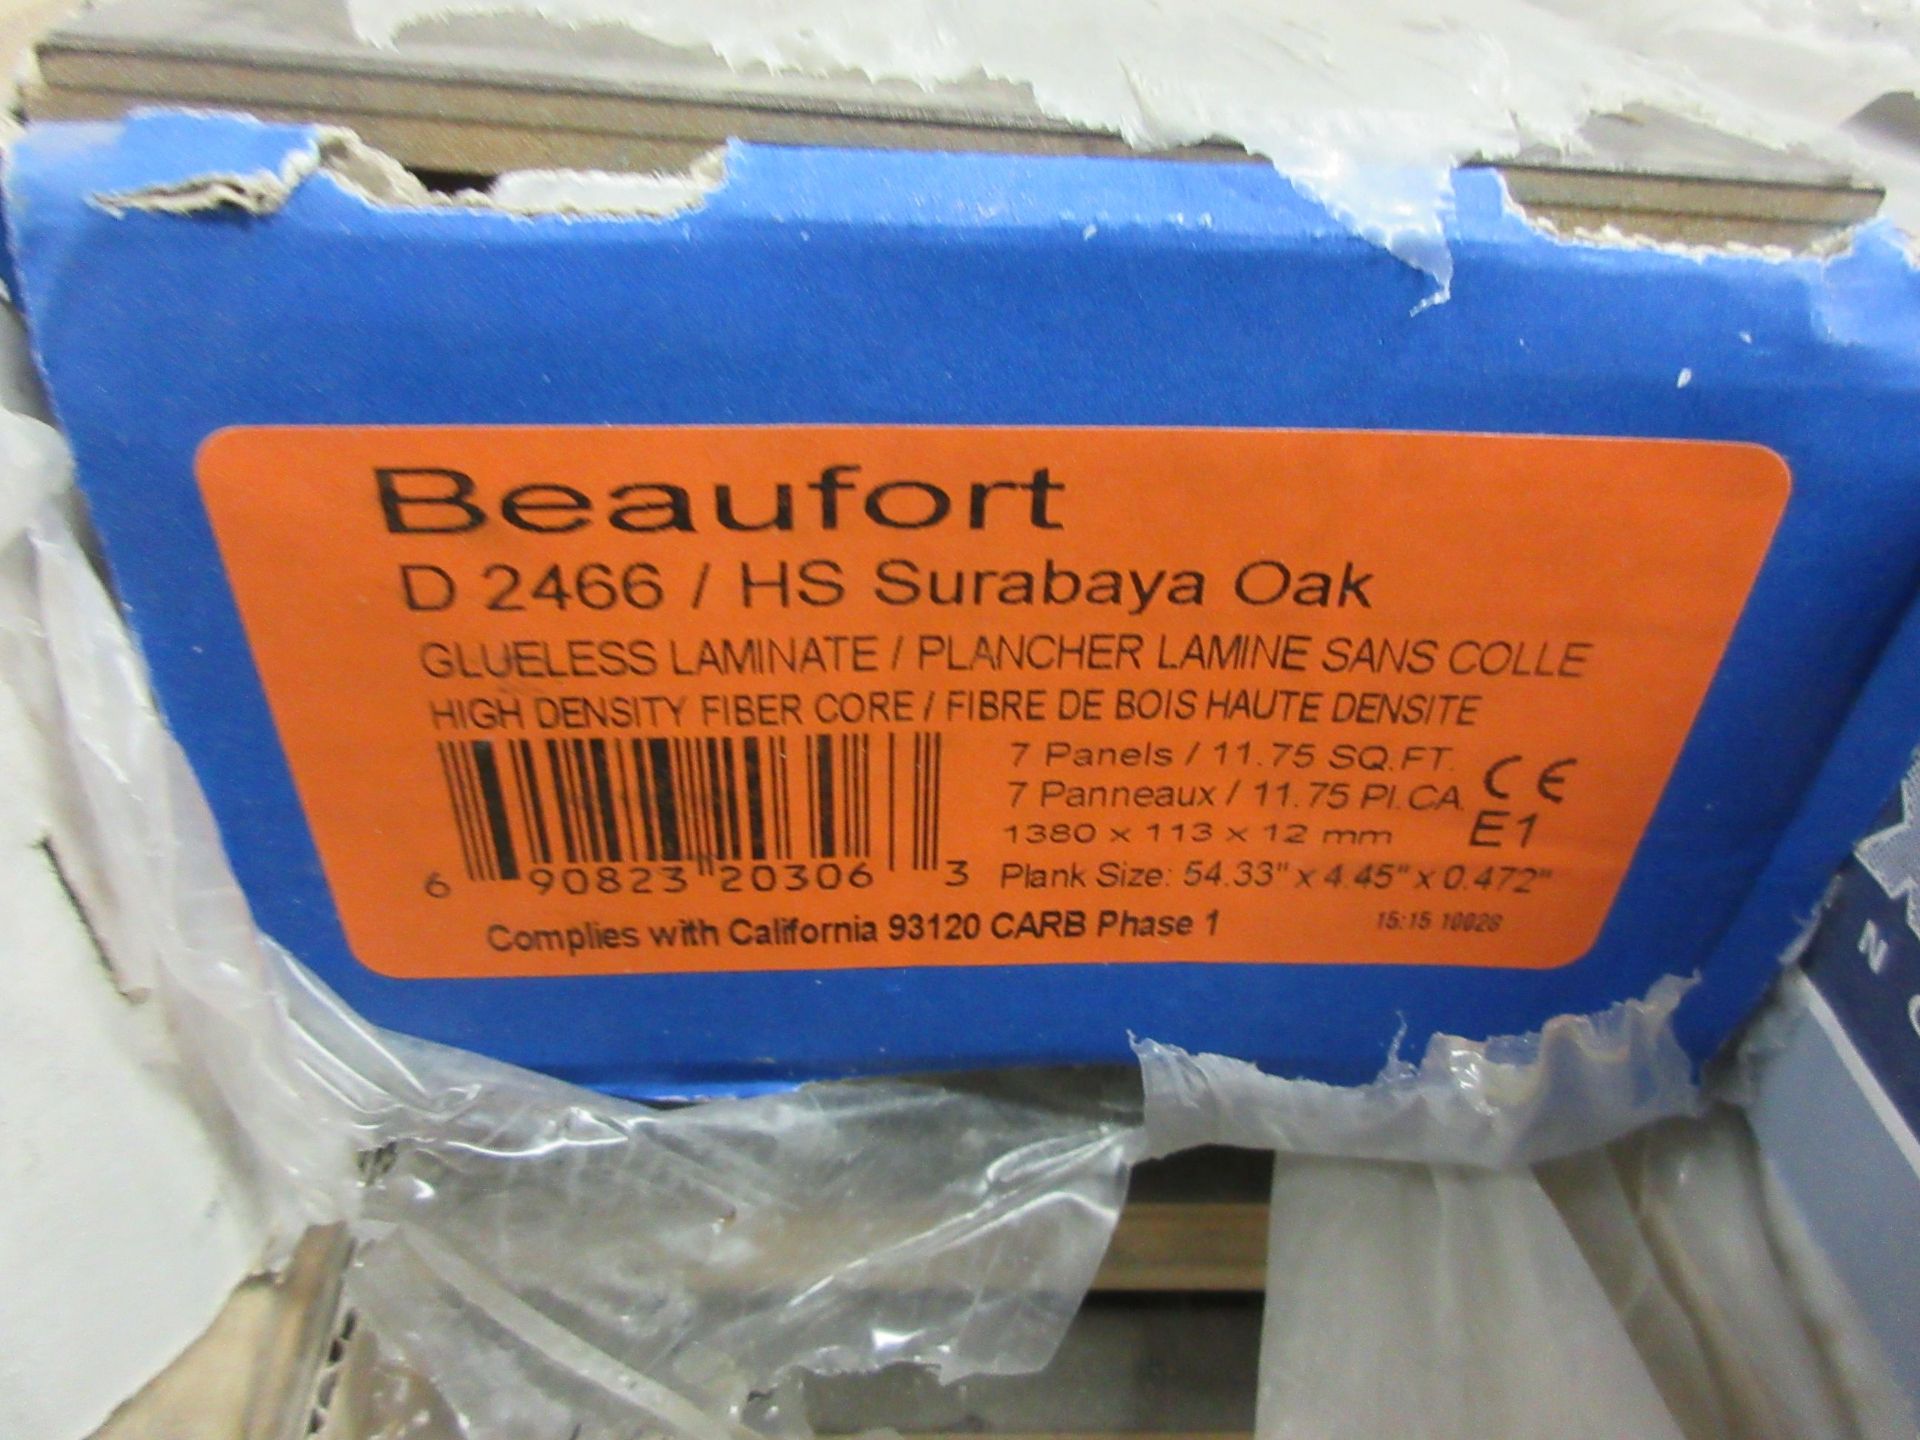 Laminate flooring (surabaya oak) 7 pieces/box, 11.75 sq. ft per box (40 boxes) - Image 4 of 5